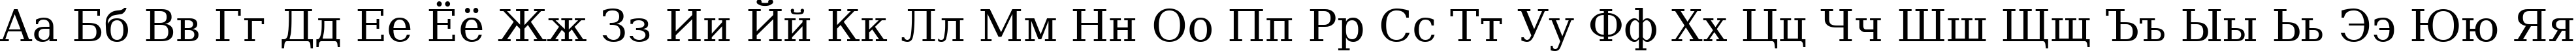 Пример написания русского алфавита шрифтом DejaVu Serif